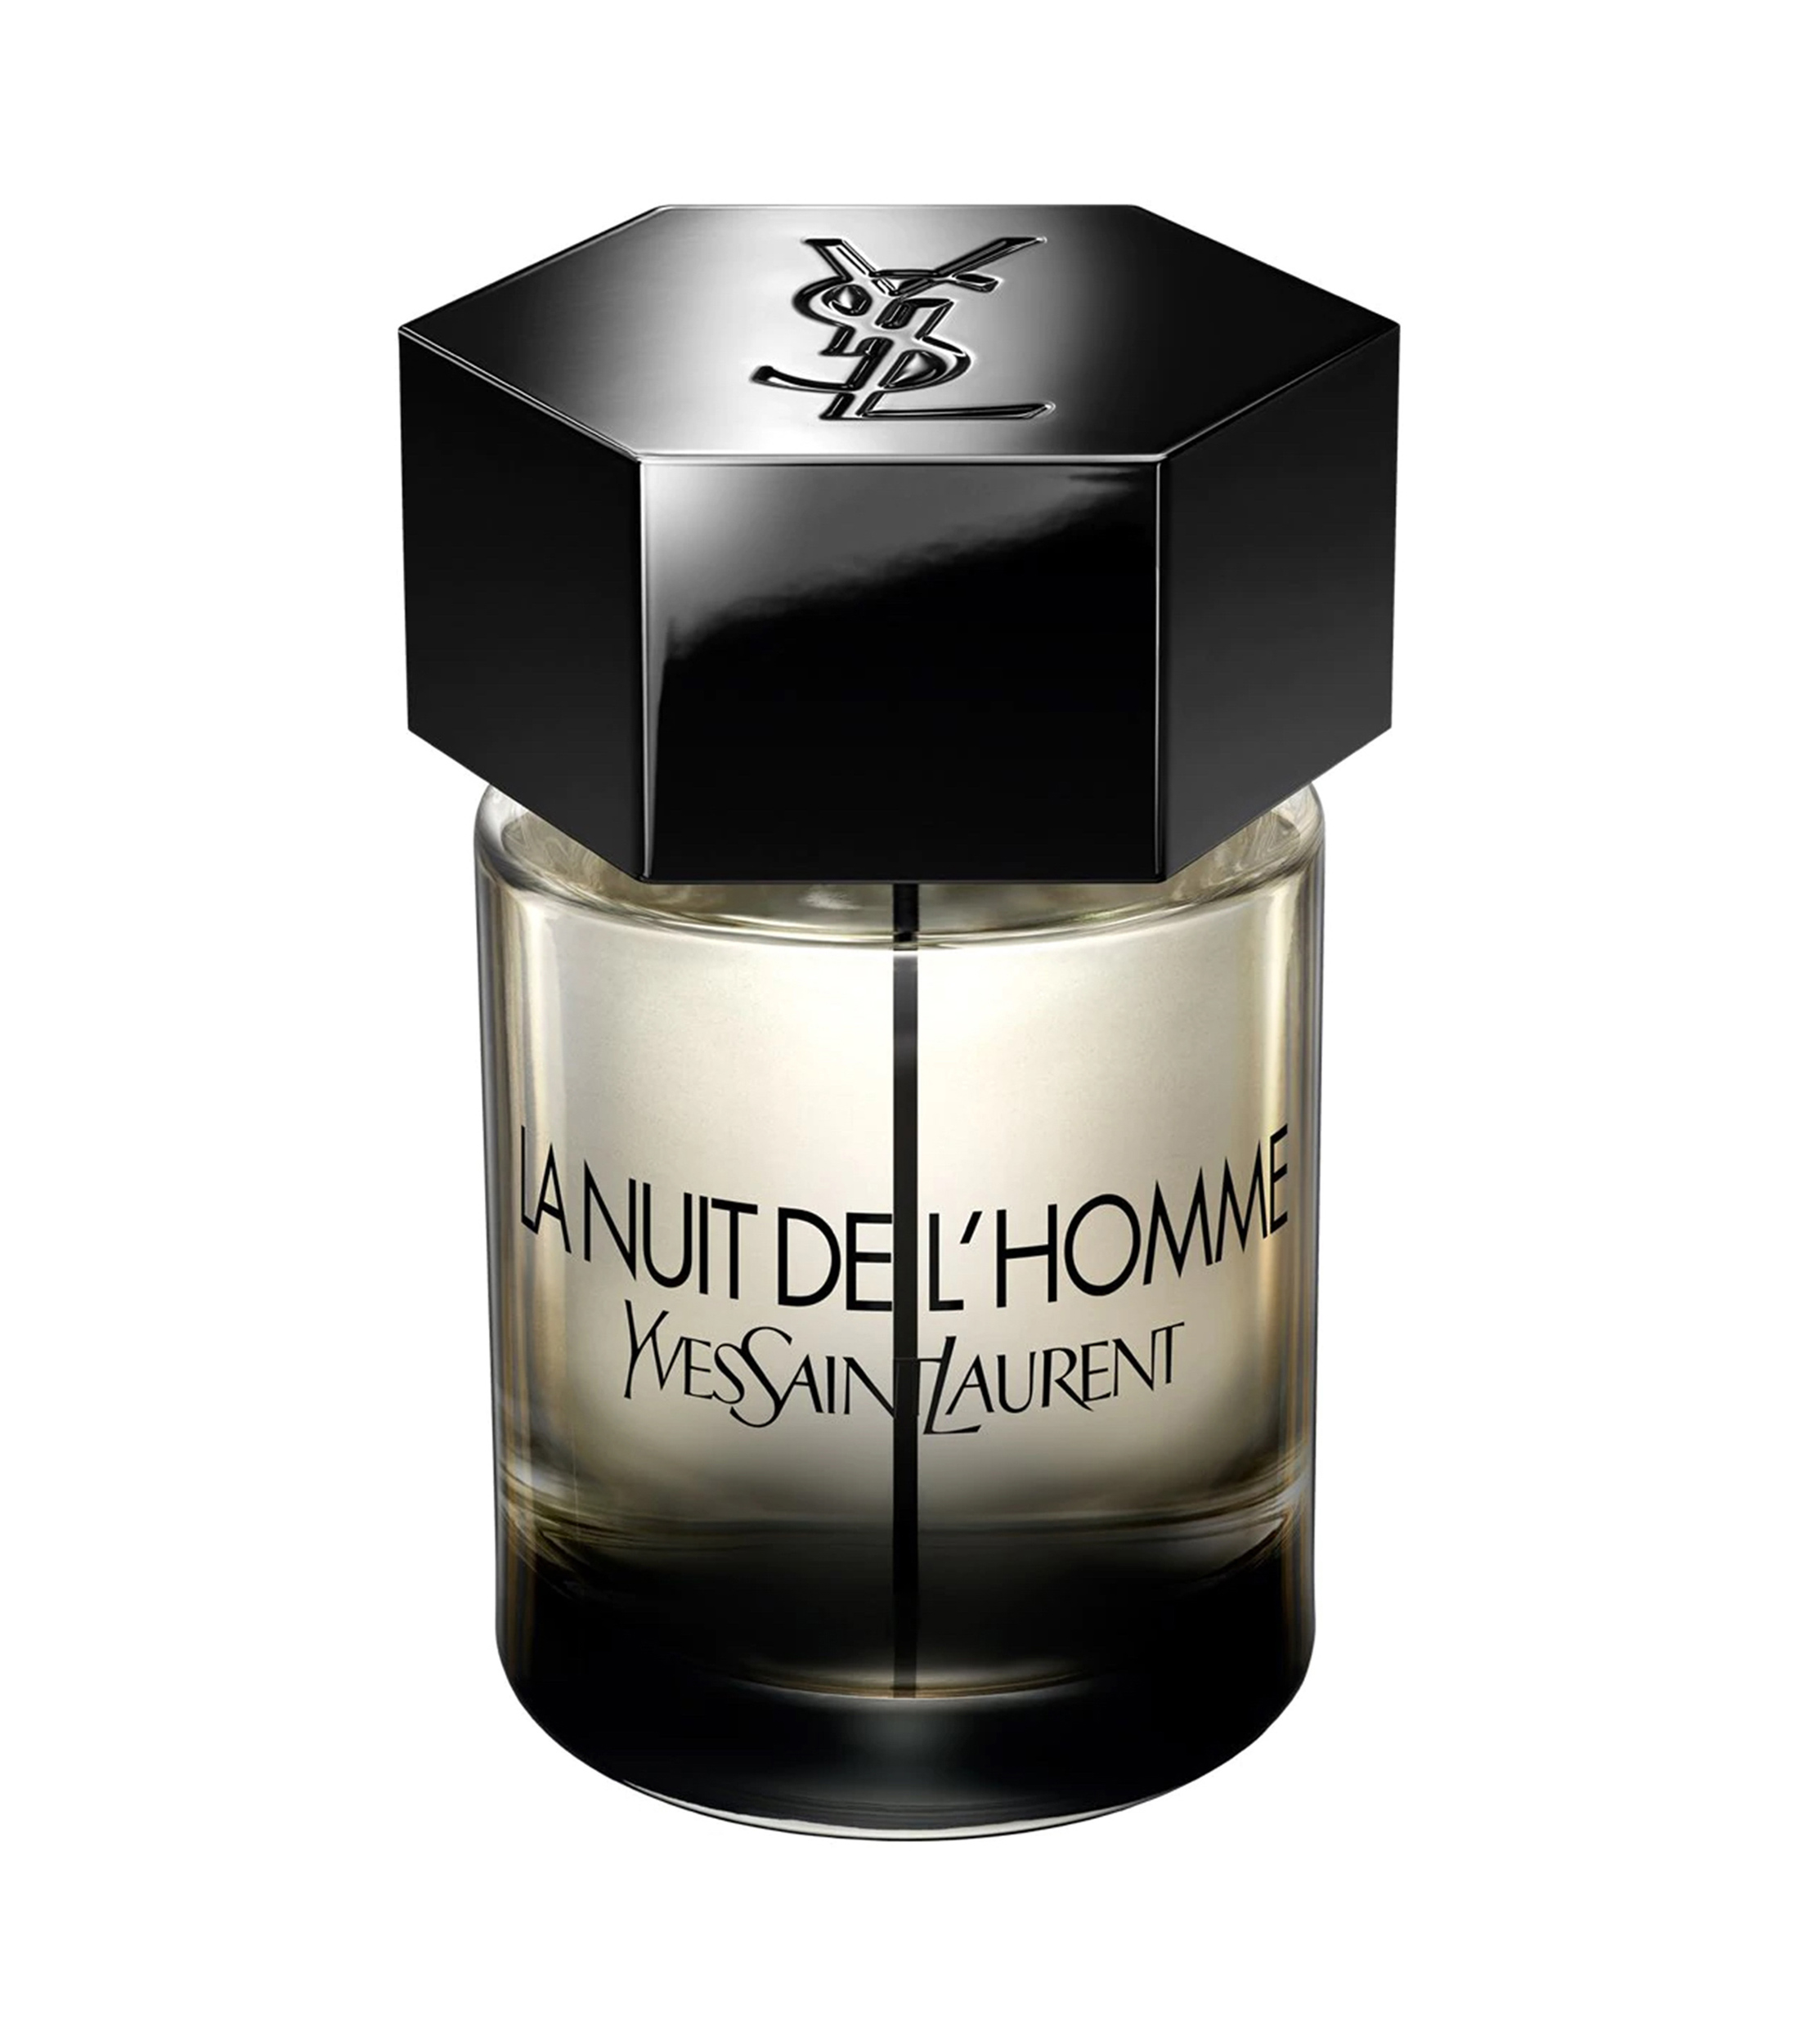 Yves Saint Laurent Perfume, La Nuit de L'Homme Eau de Toilette, 100 ml